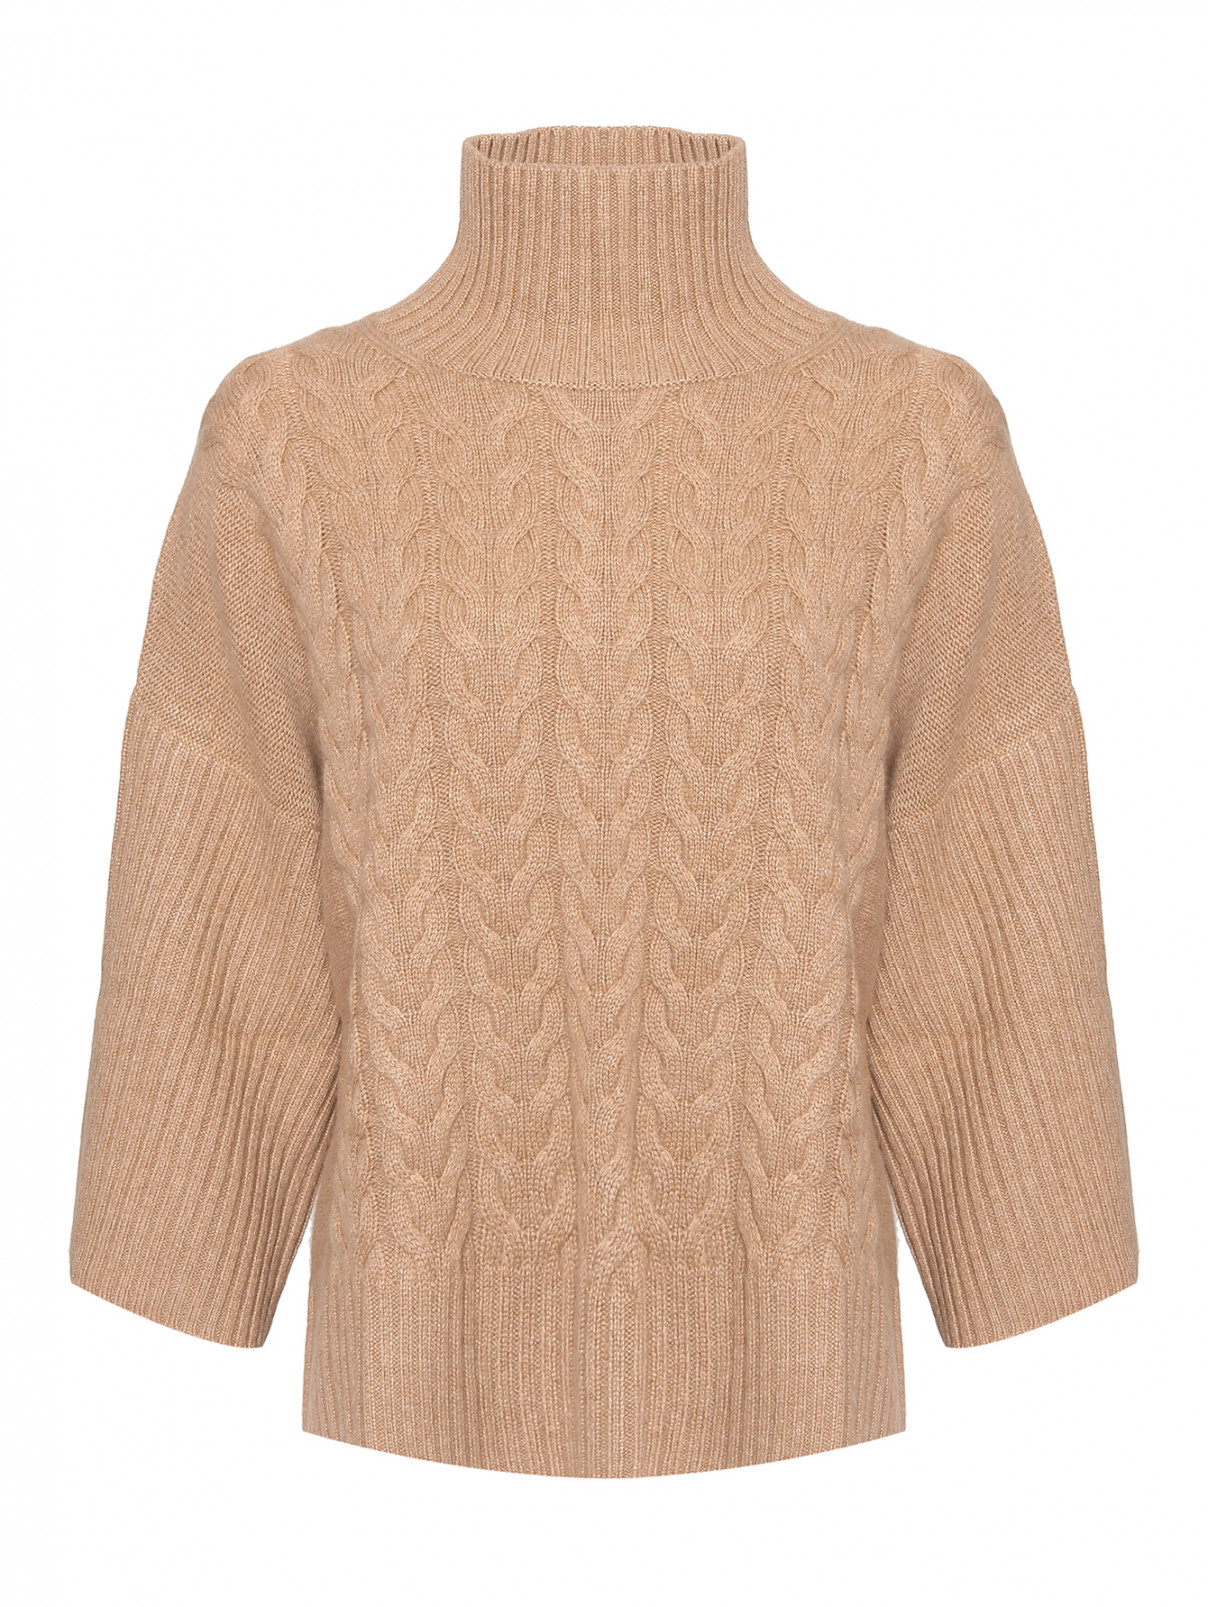 Кашемировый свитер с косами Max Mara  –  Общий вид  – Цвет:  Бежевый